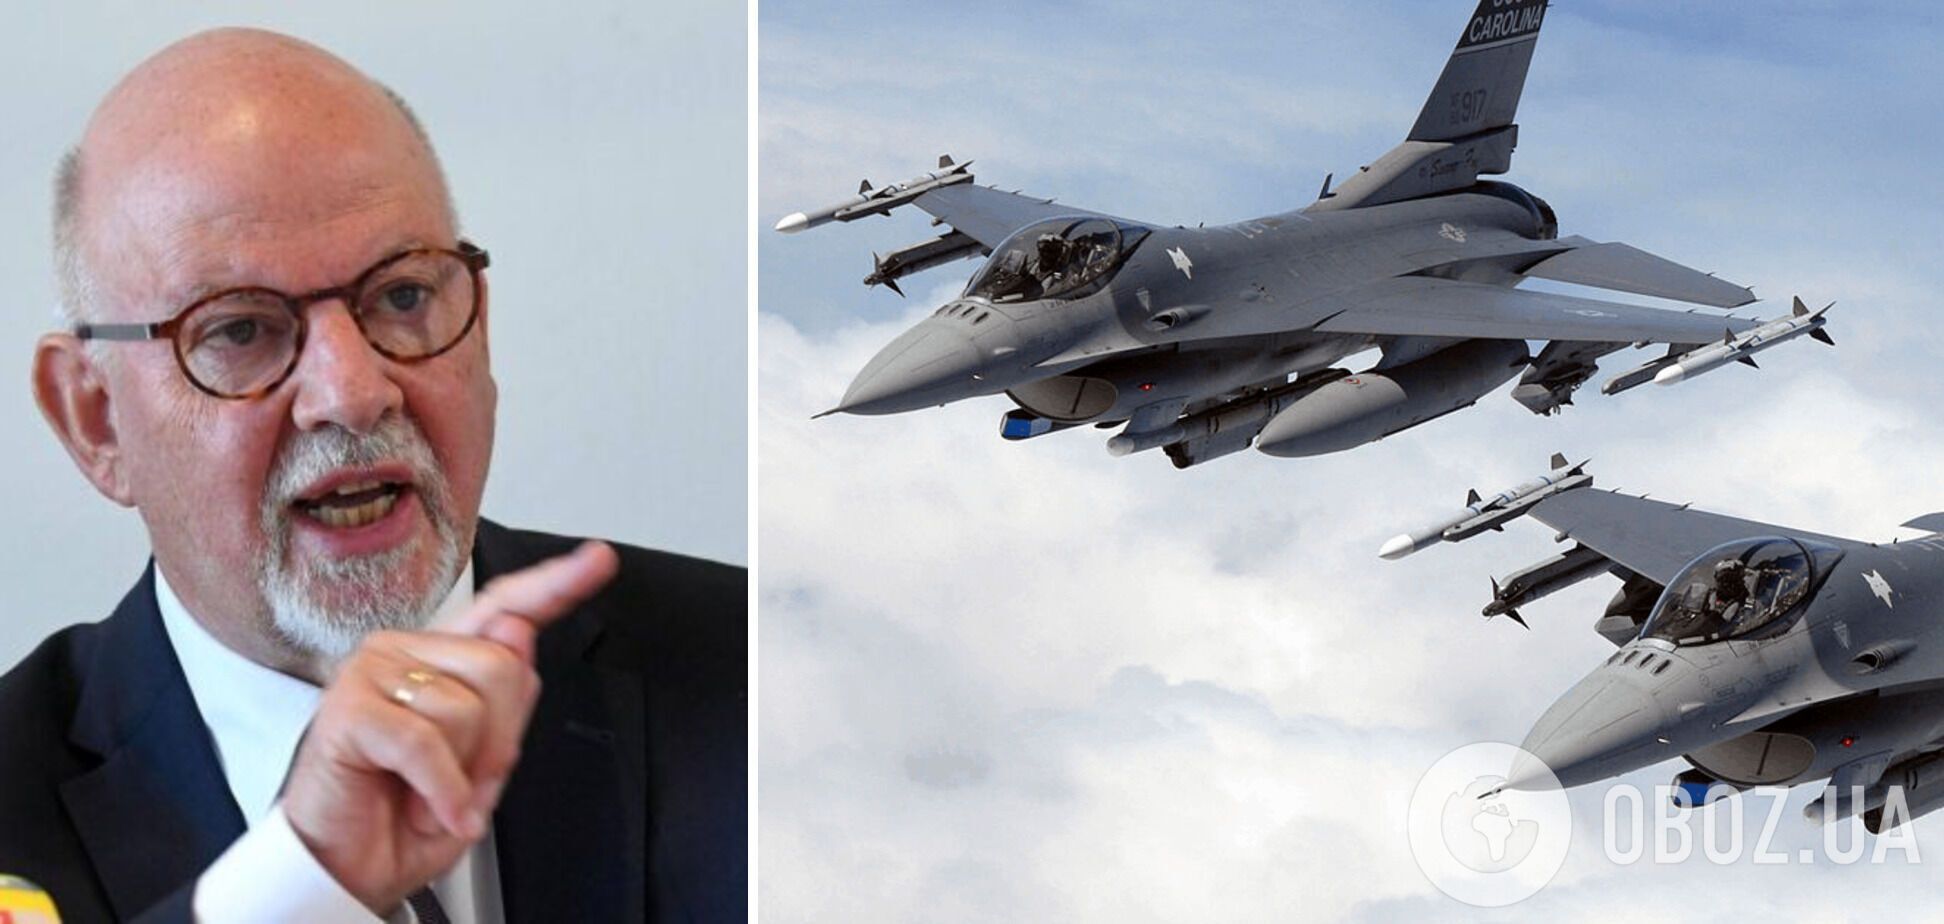 Мартин Экснер призвал предоставить Украине боевые самолеты